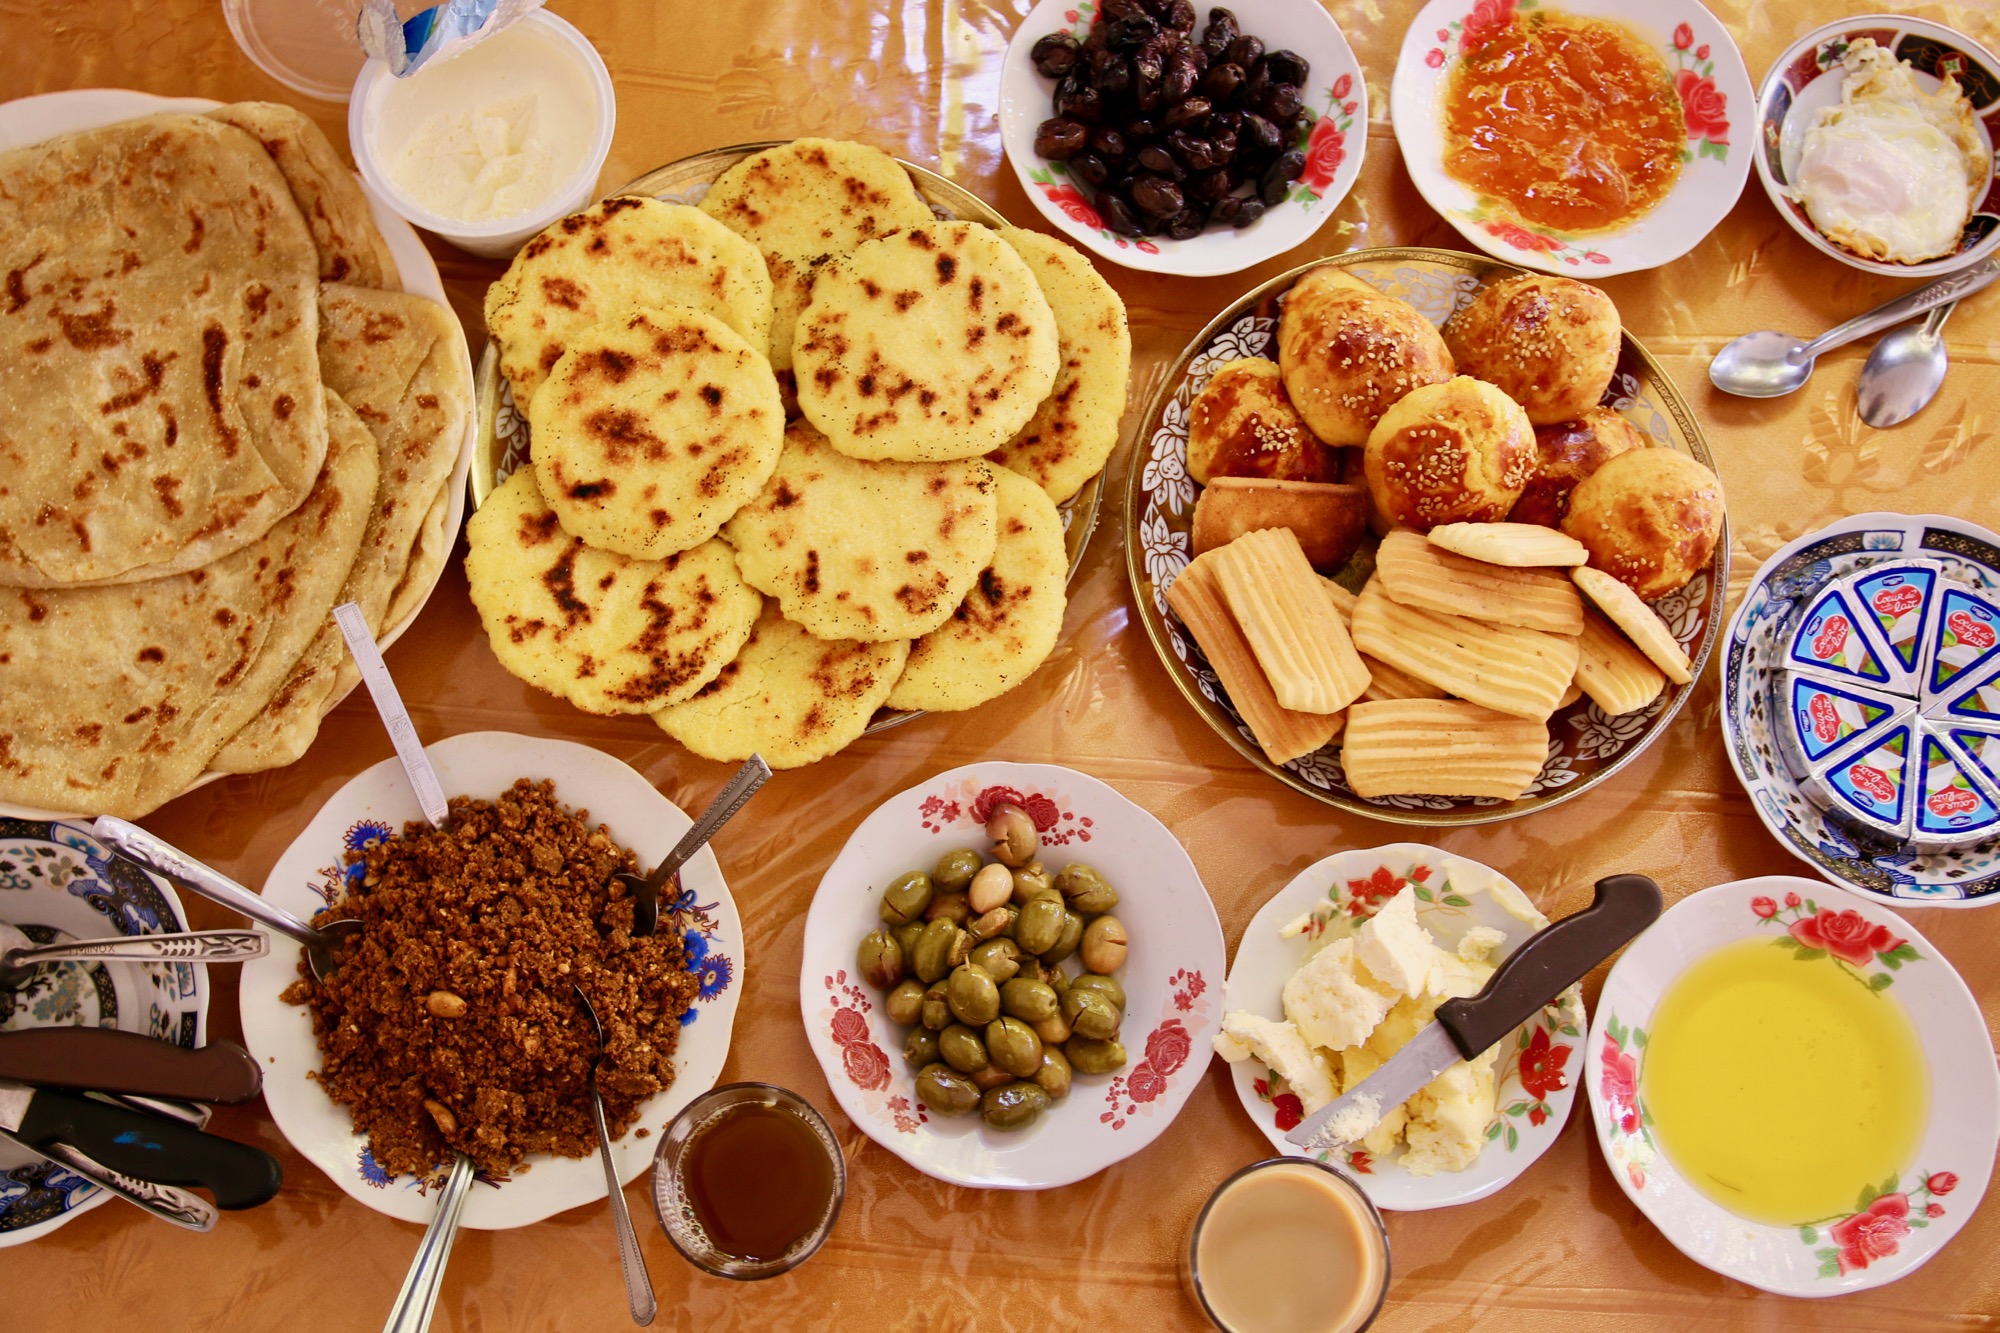 ジャジューカ村の朝食 #joujoukajp 02